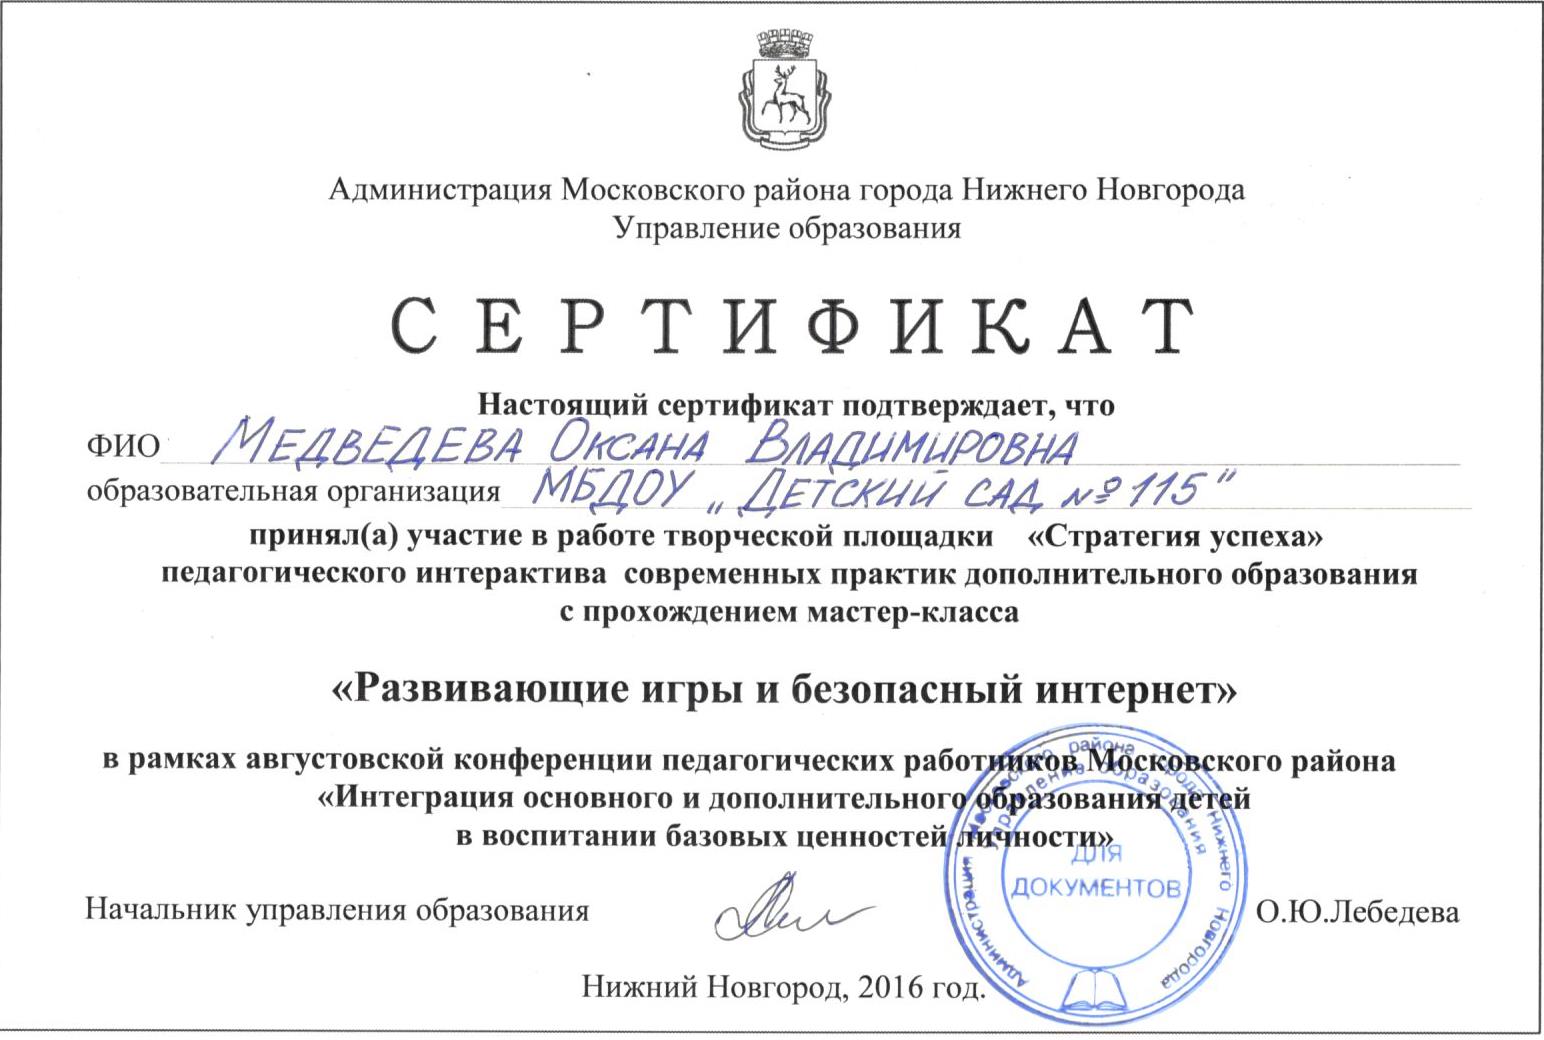 Сертификат Августовская конференция-2016 Медведева О.В.